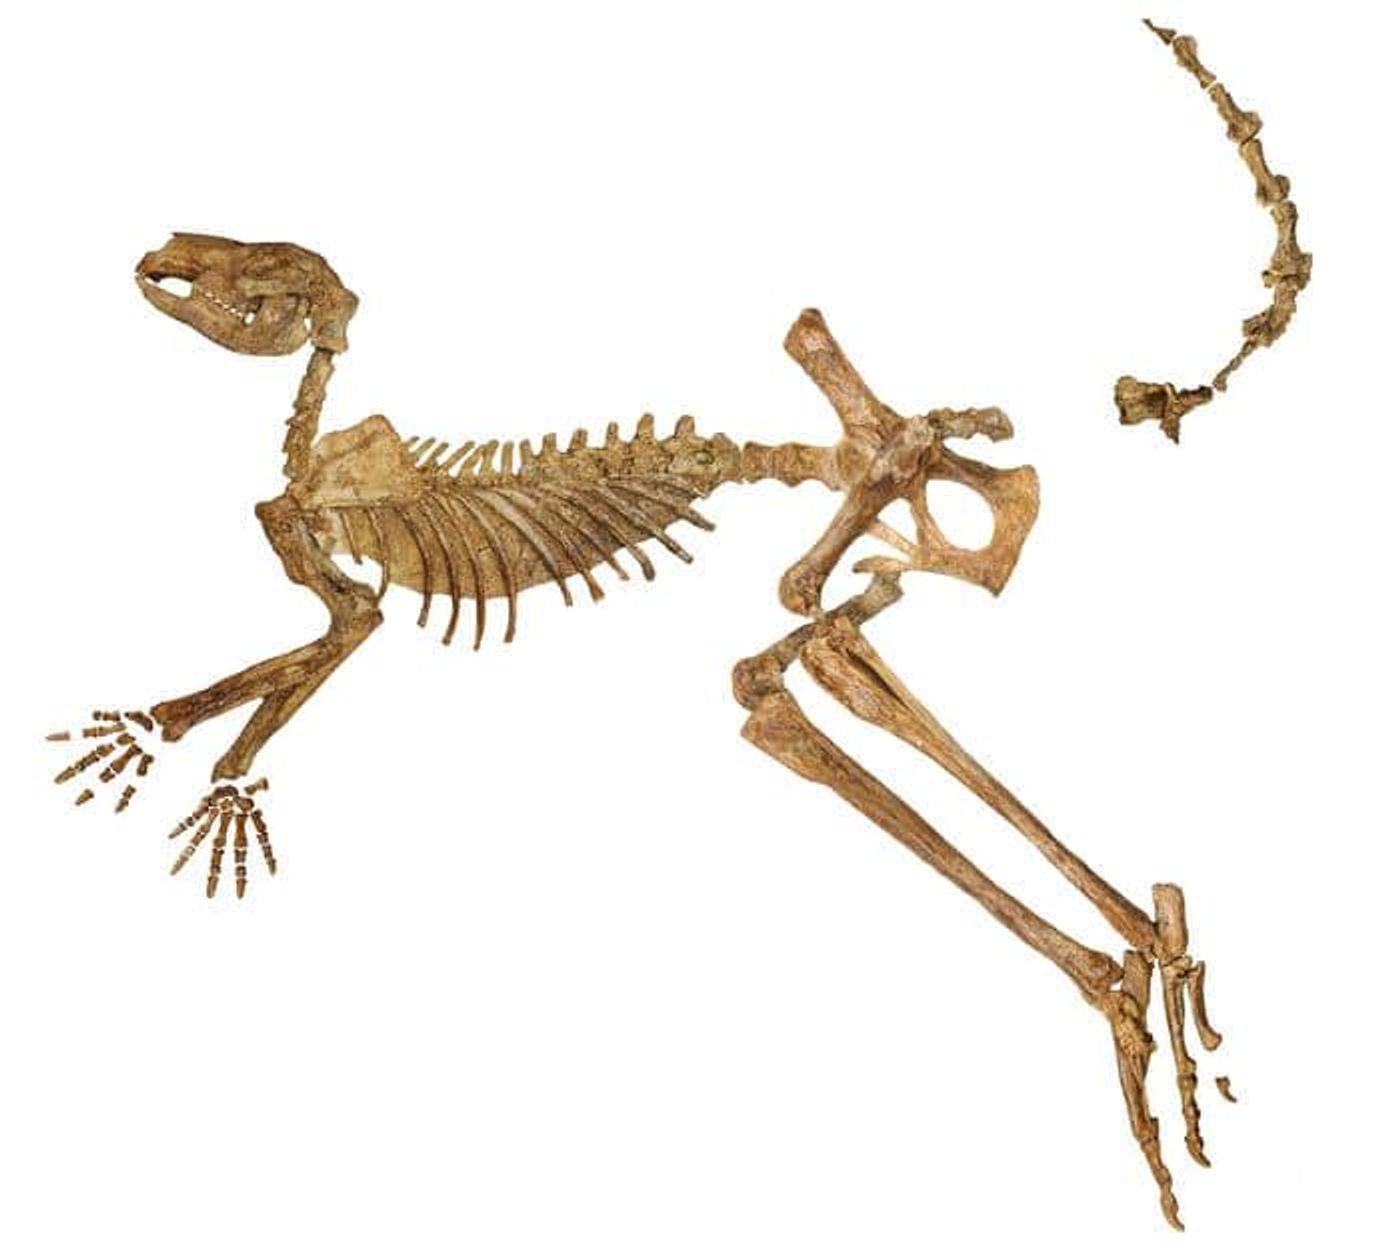 Найденный в озере Каллабонна почти полный ископаемый скелет вымершего гигантского кенгуру Protemnodon viator, в котором не хватает лишь нескольких костей руки, ноги и хвоста